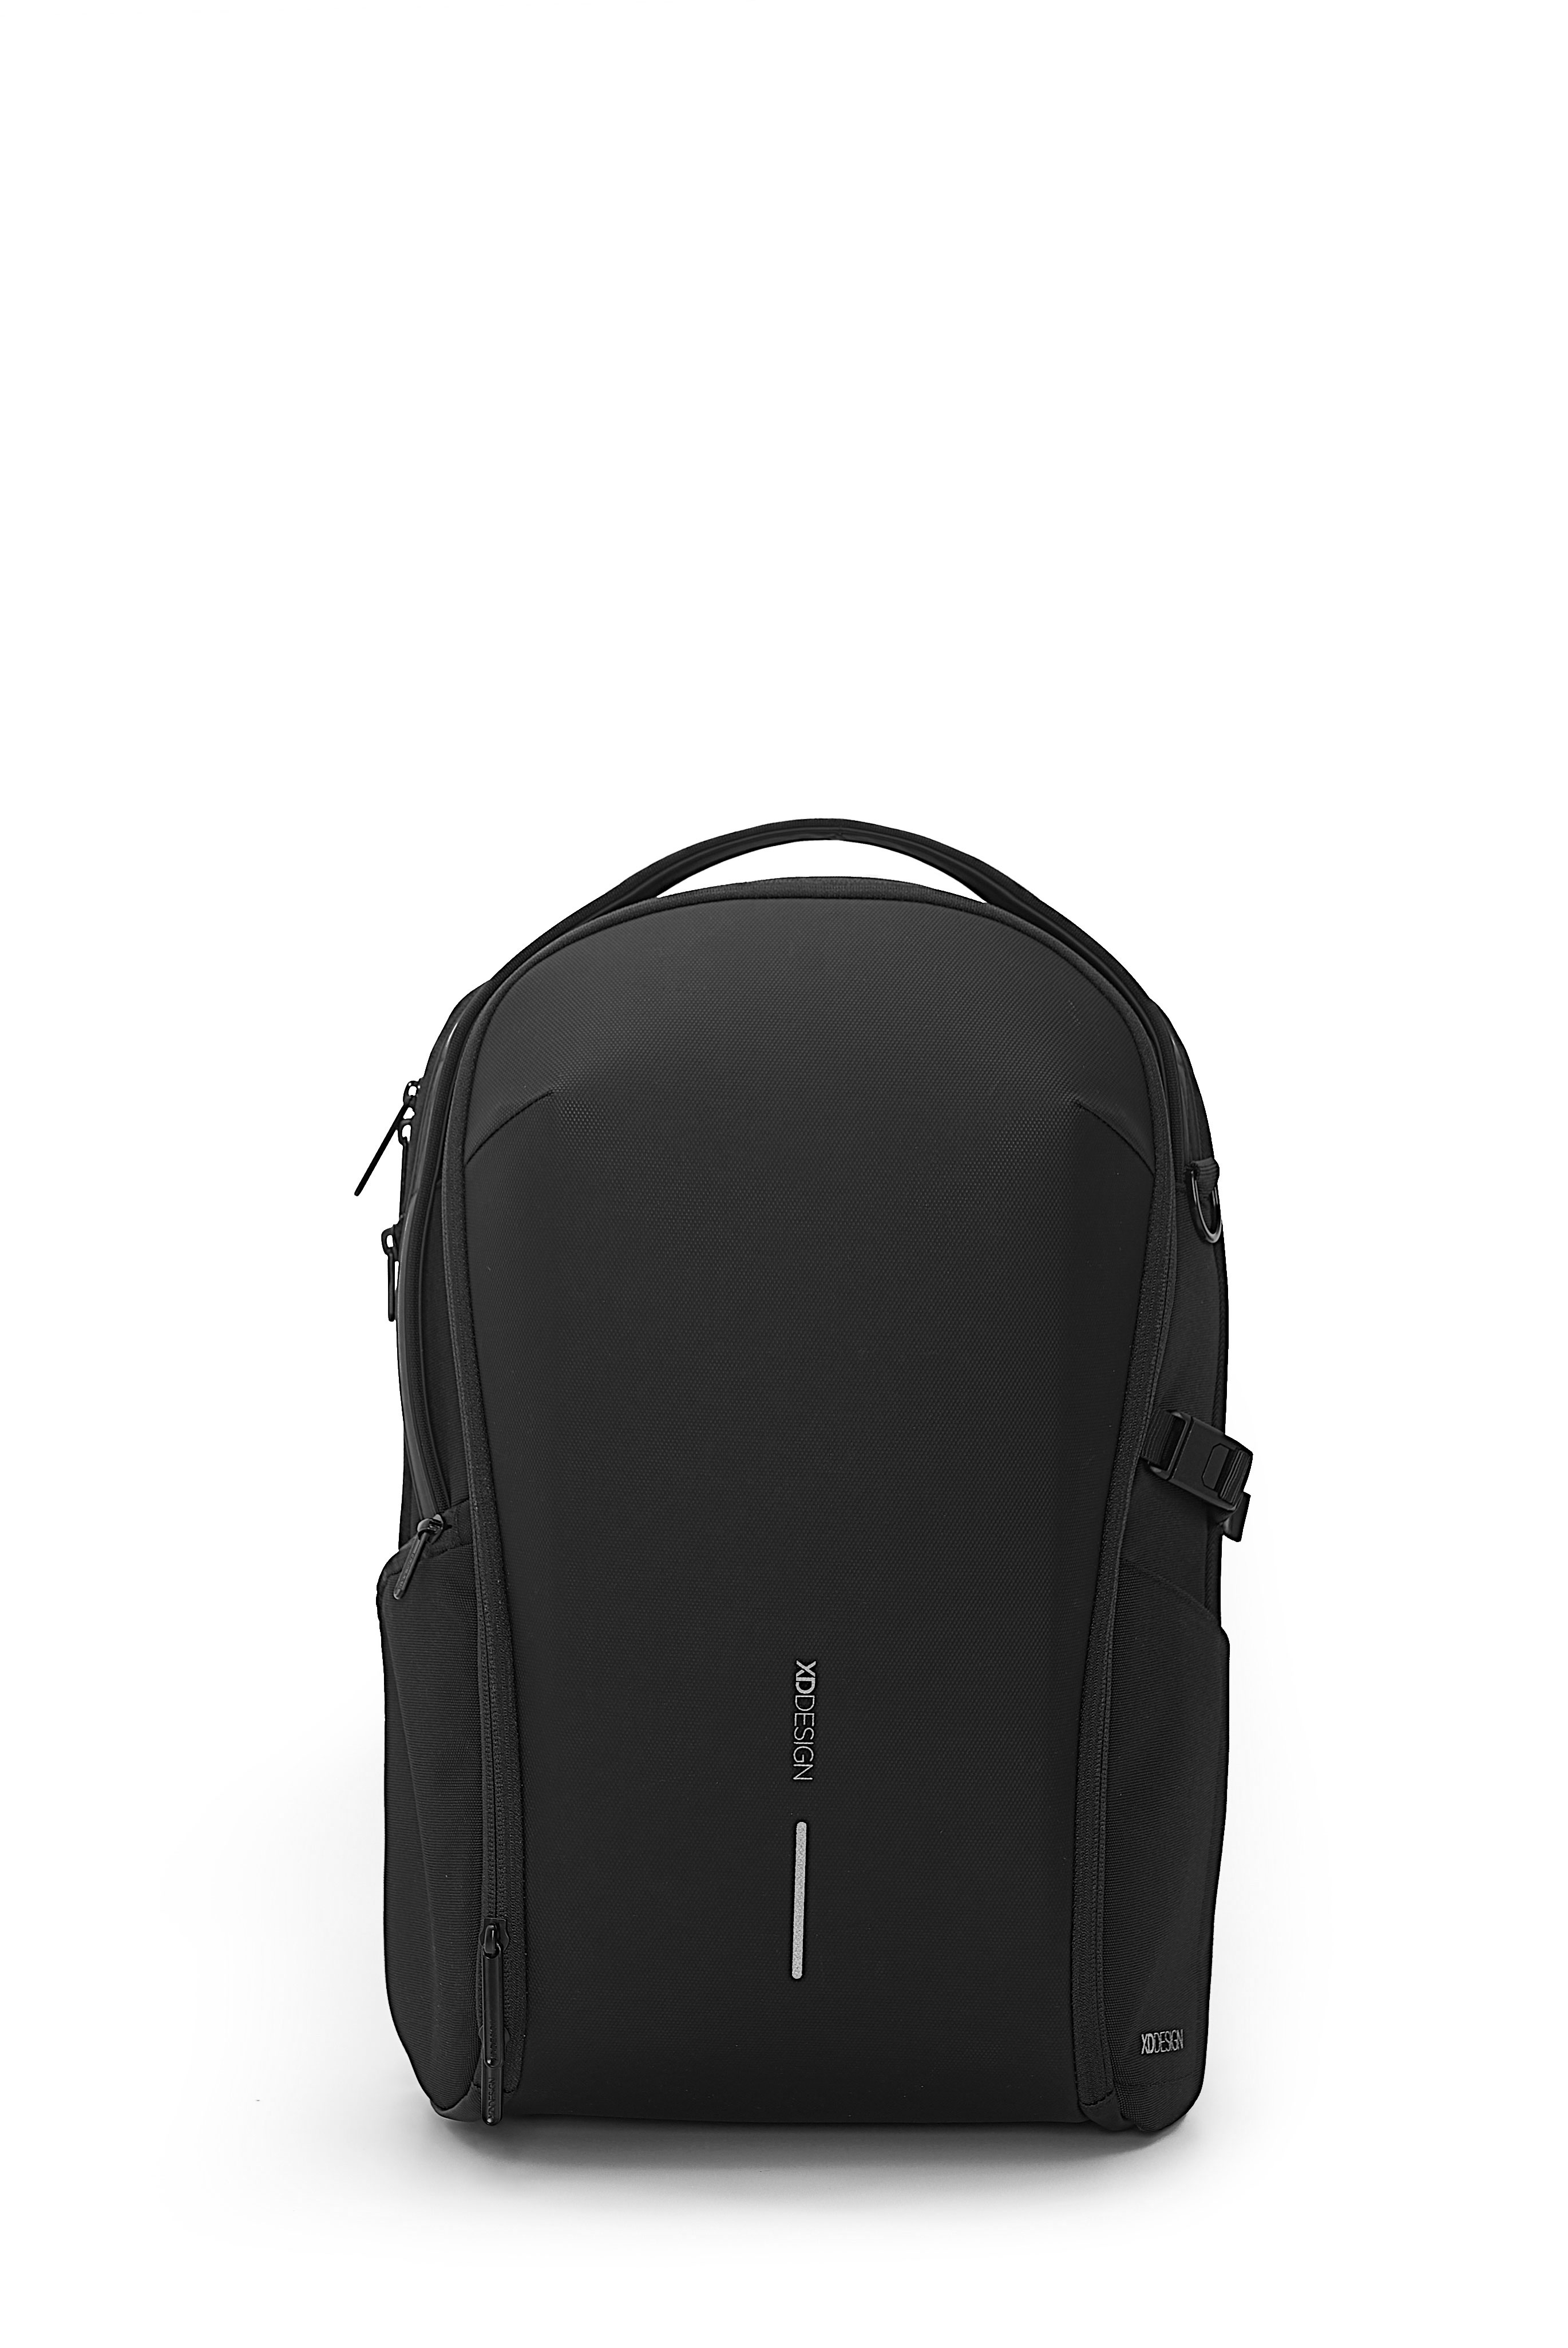 XD Design - Bobby Bizz backpack - Black (P705.931) - Bagasje og reiseutstyr